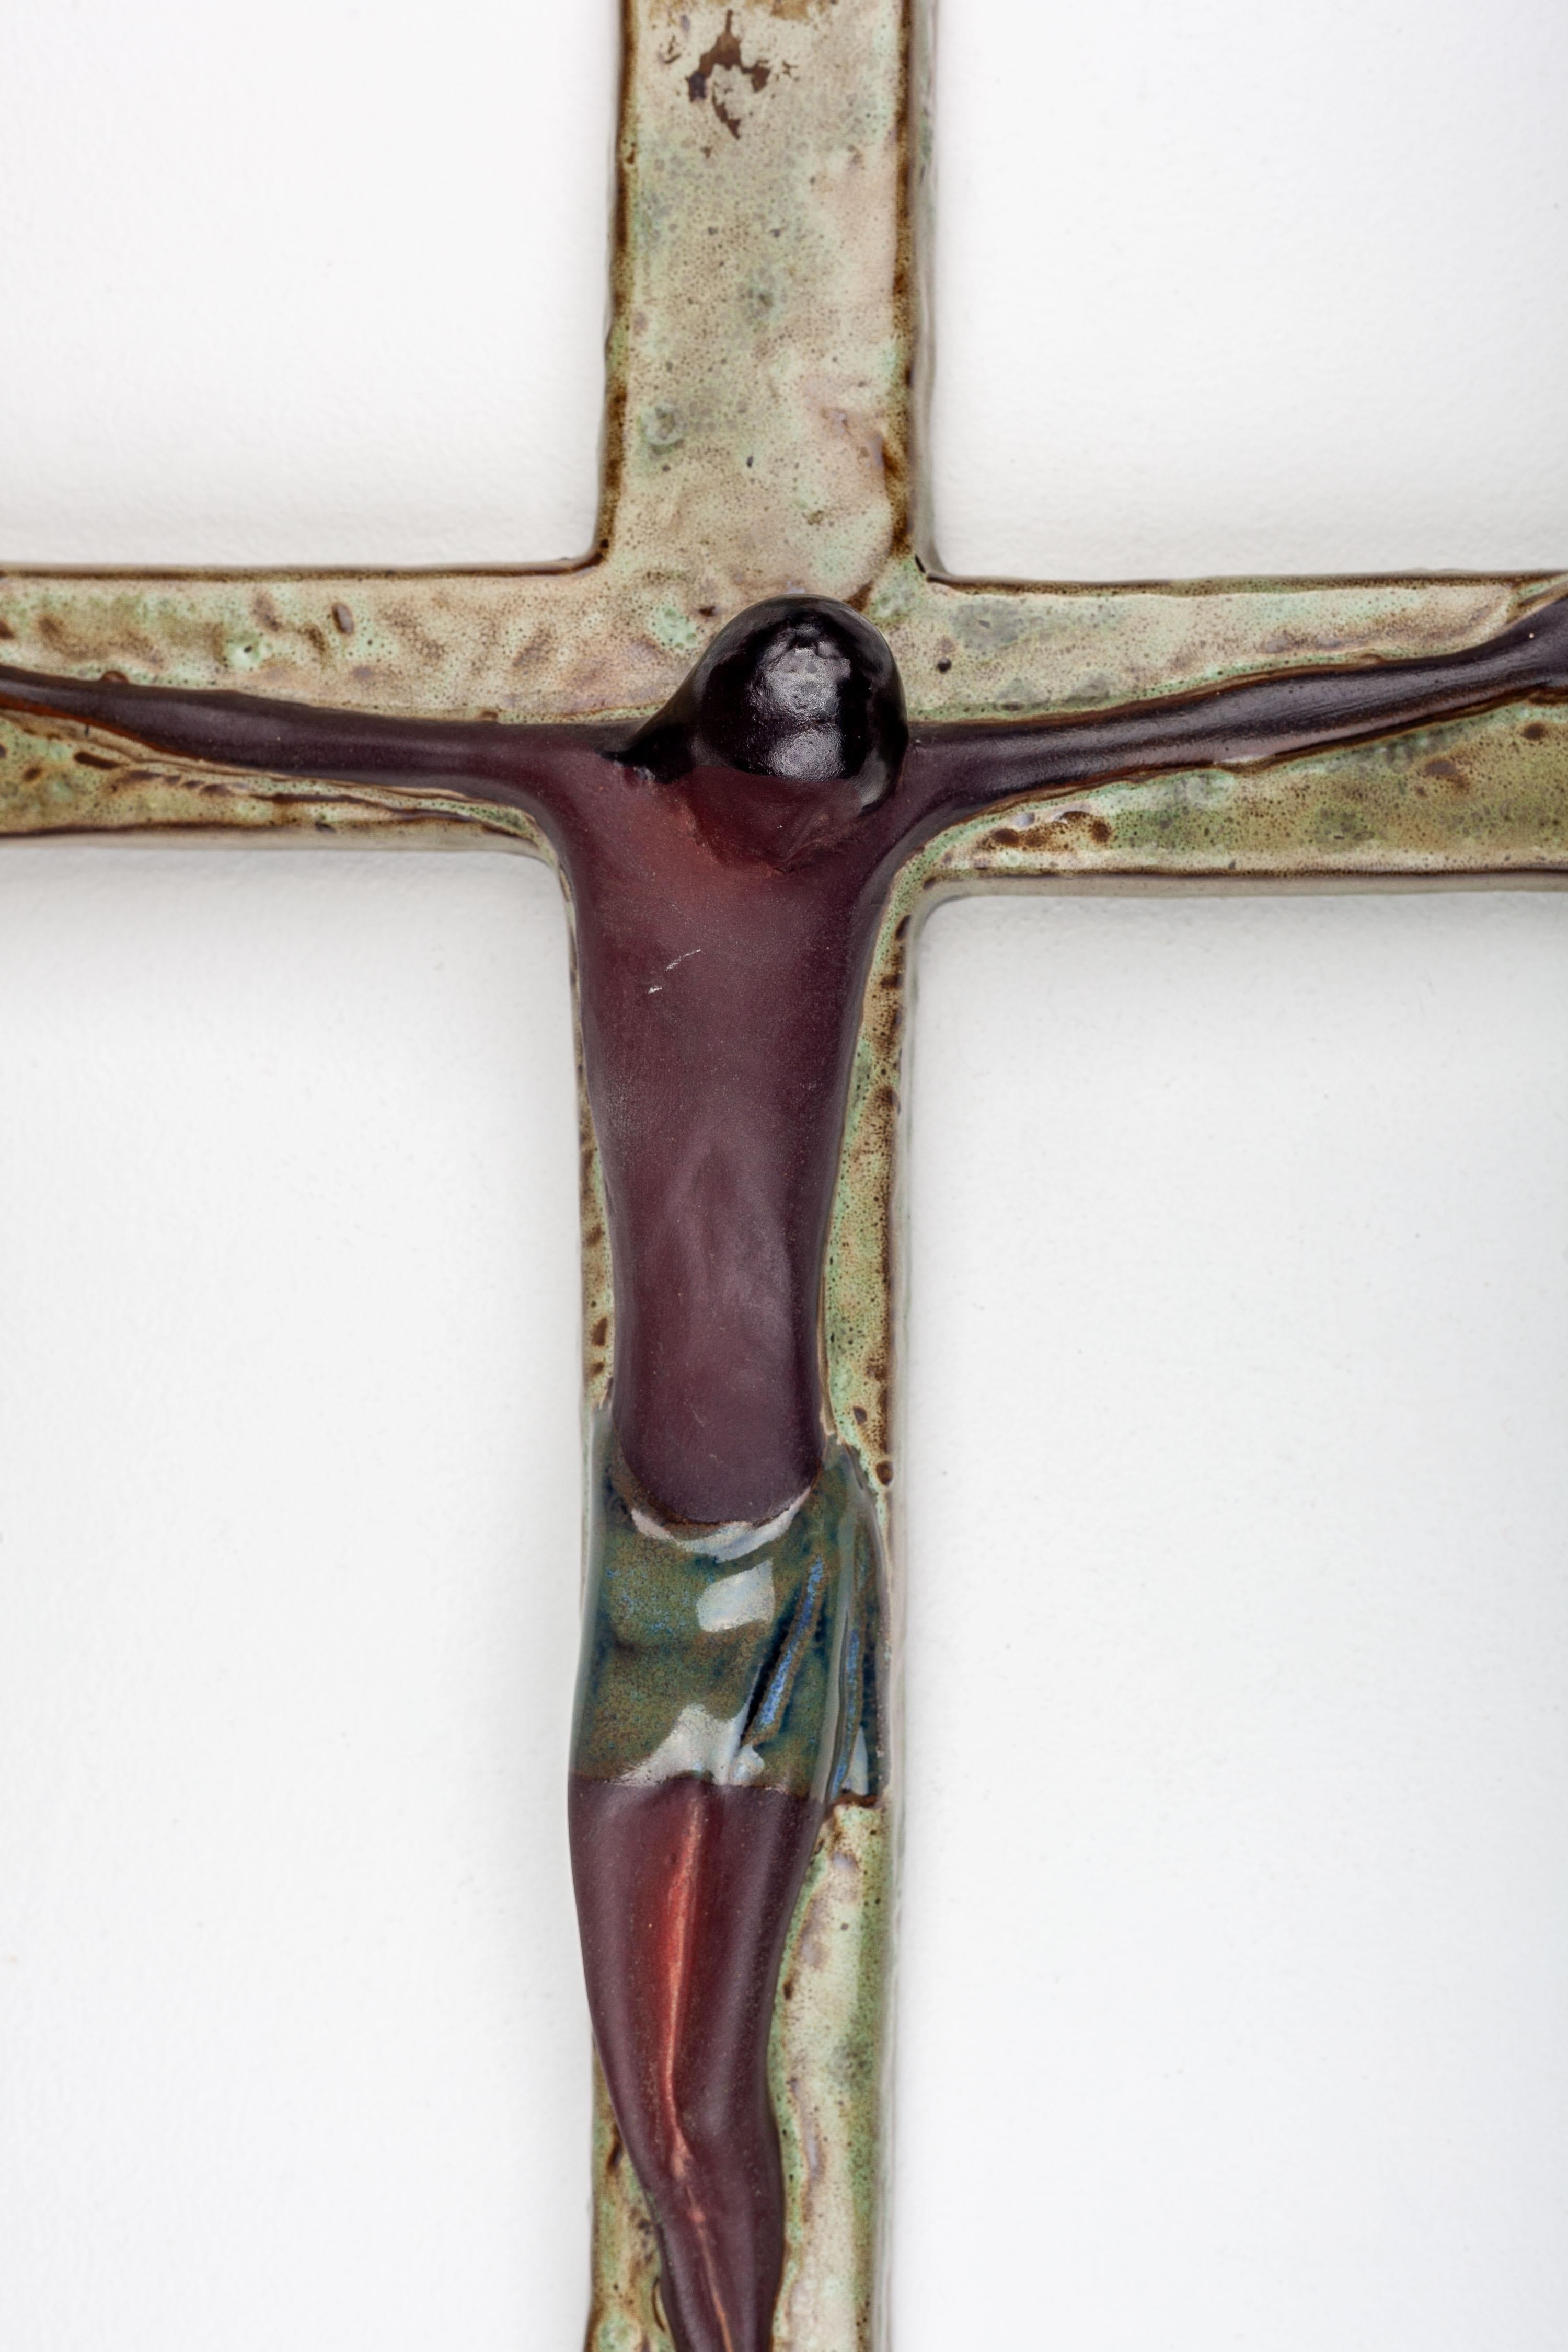 Ce crucifix mural de 16 pouces en poterie de studio moderniste, méticuleusement fabriqué en Europe, présente un design unique. Il s'agit d'une croix murale avec une texture chartreuse et brune semblable à de la mousse, accompagnée d'un personnage de